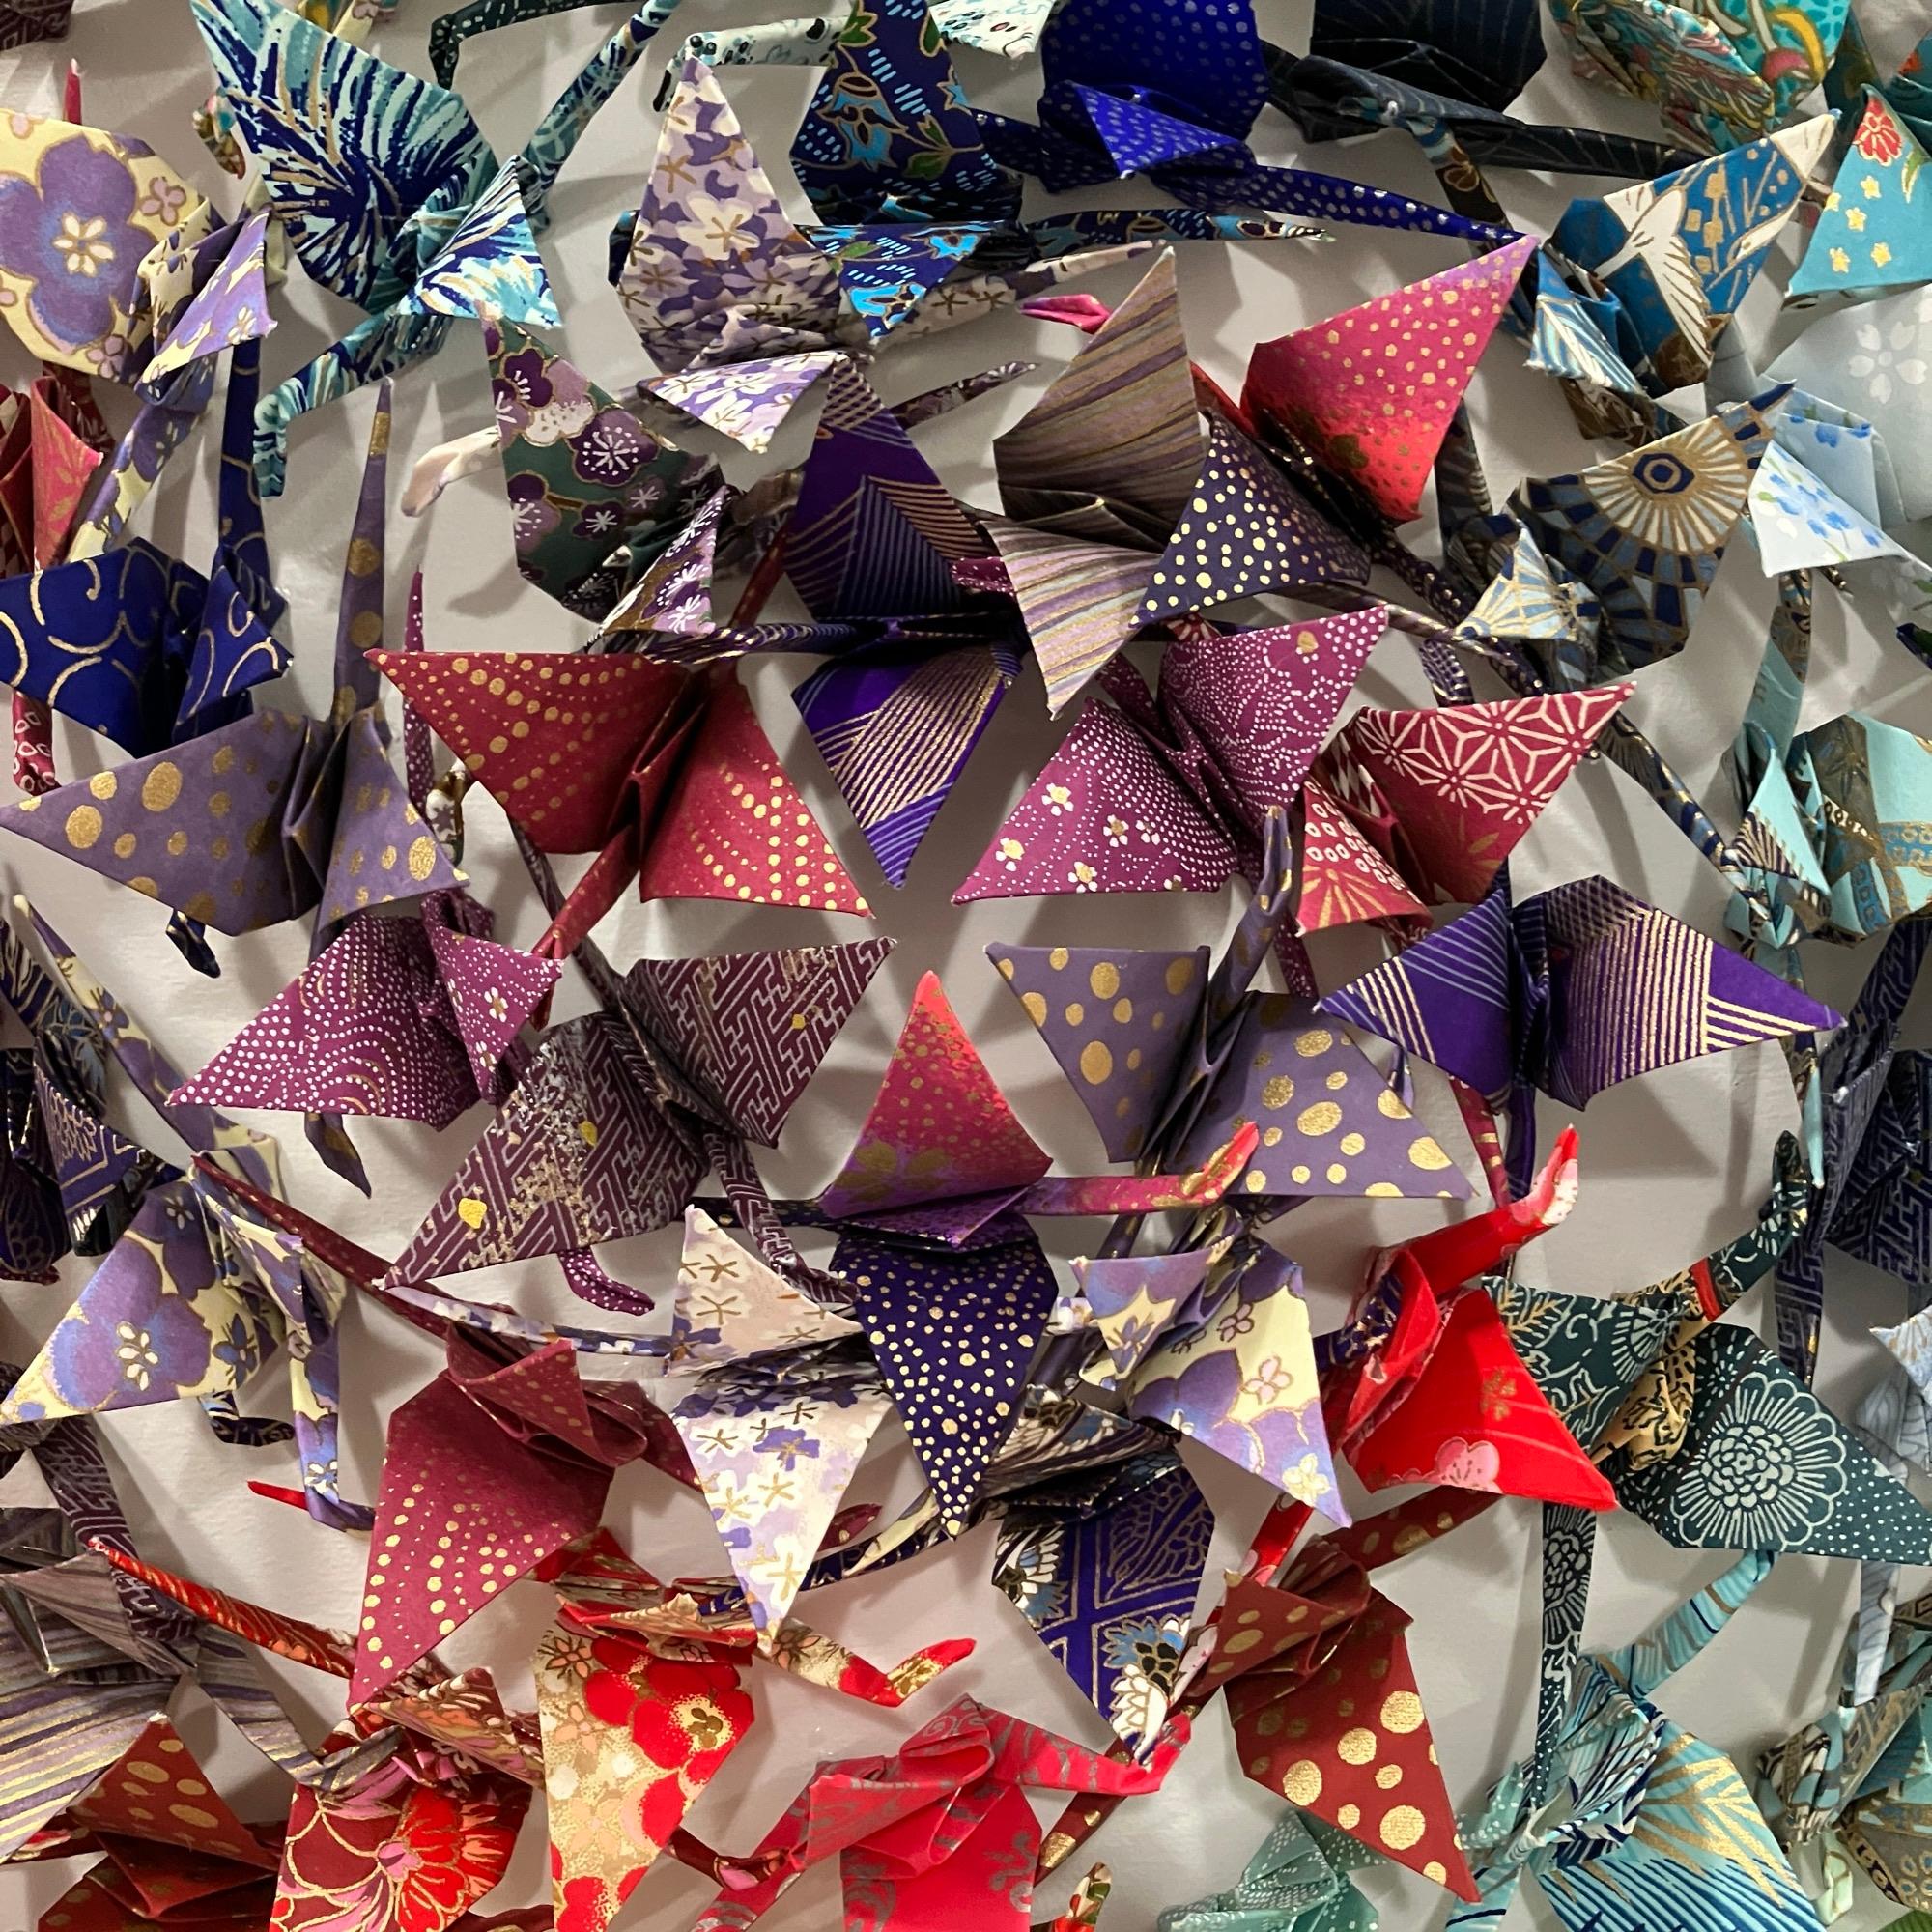 Dieses einzigartige Origami-Werk zeigt Hunderte von handgefalteten Chiyogami-Papierkranichen, die präzise auf eine Holzplatte montiert und in eine elegante Acryl-Schattenbox gerahmt sind.

Andrew Wang erkundet große Reisen durch Origami-Assemblage,